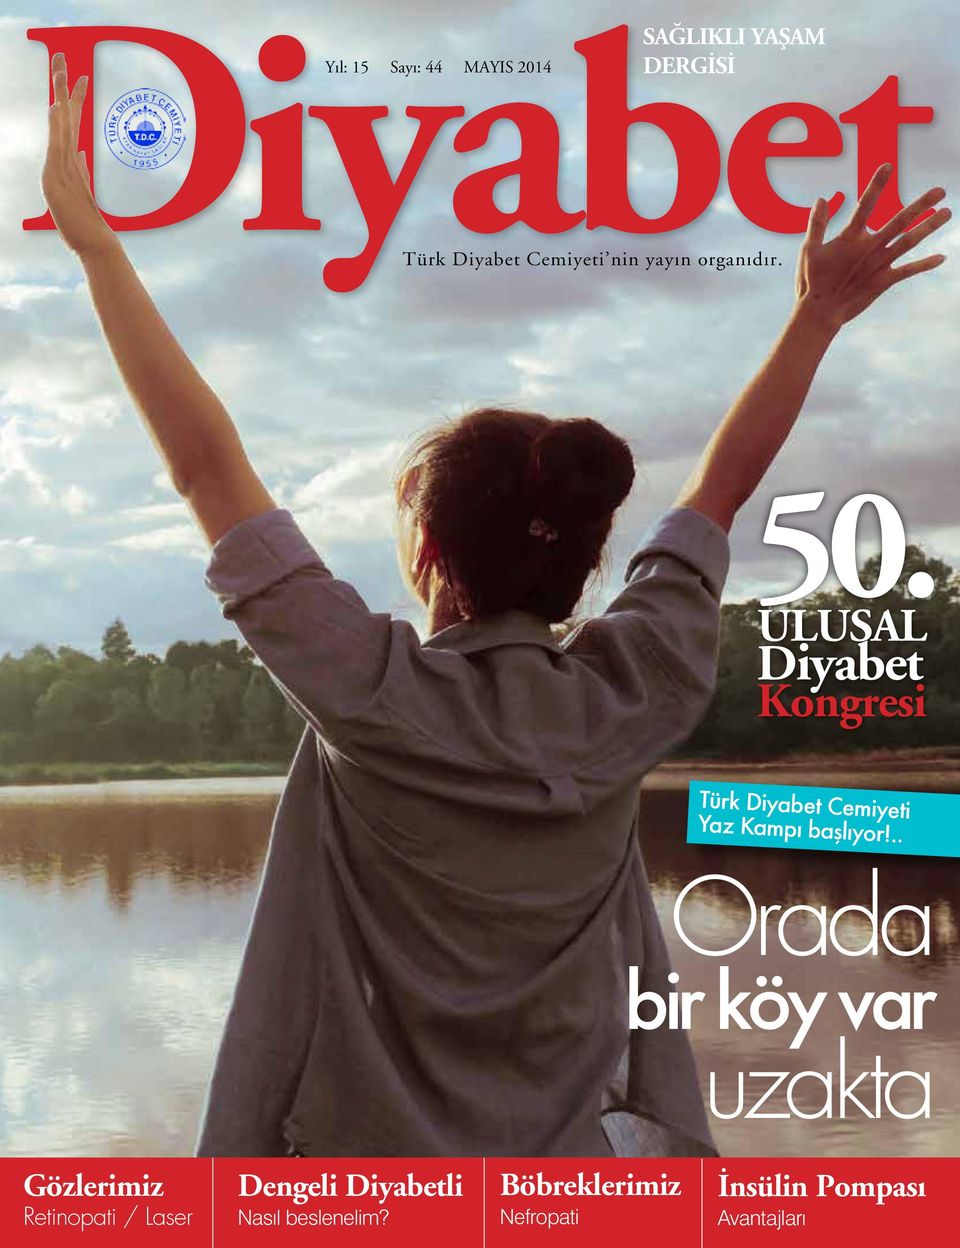 ULUSAL Diyabet Kongresi Türk Diyabet Cemiyeti Yaz Kampı başlıyor!